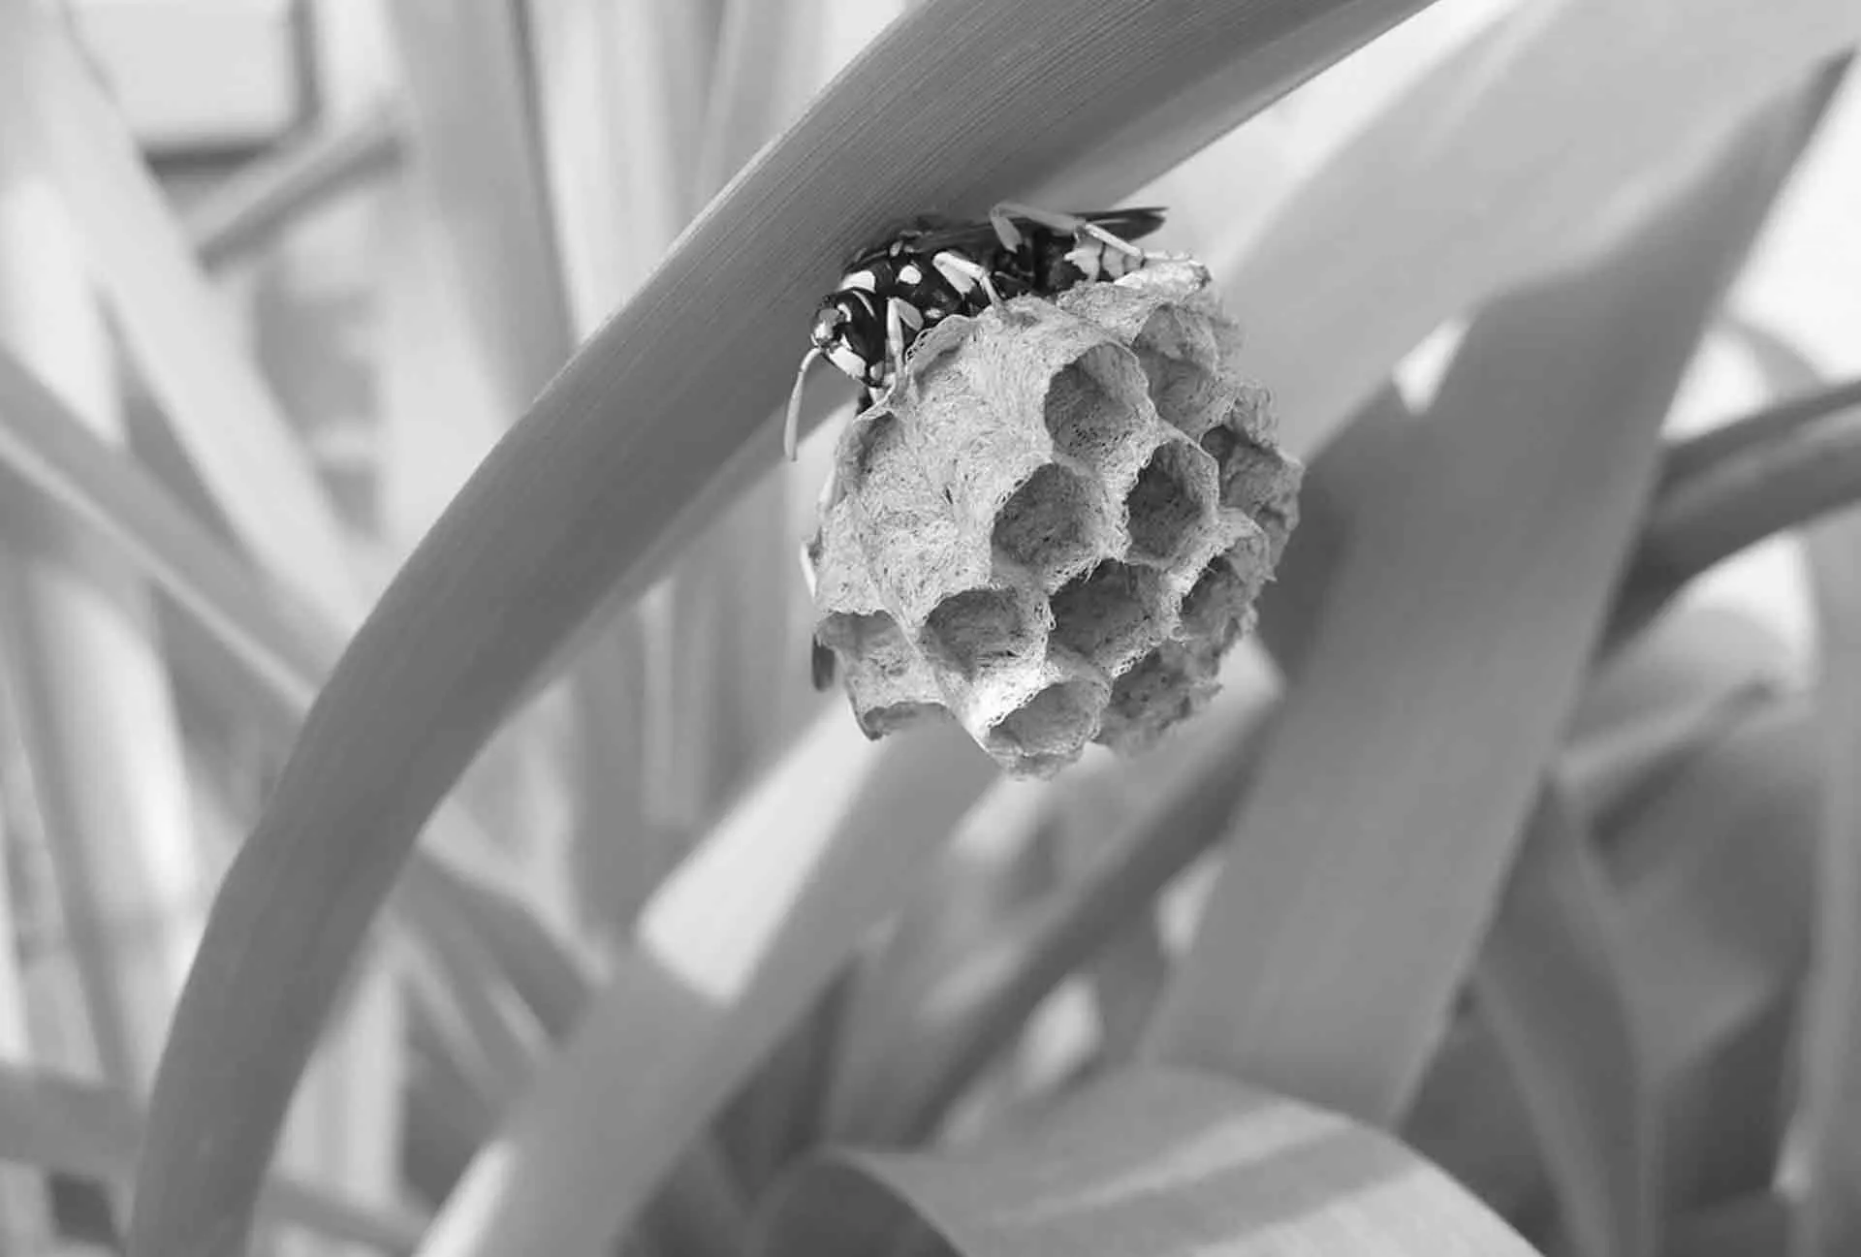 éradiquer les nids de frelon pour particuliers et professionnels, faites appel à prhygiène spécialiiste de la lutte contre les nuisibles avec certification biocides pour utilisation insecticide